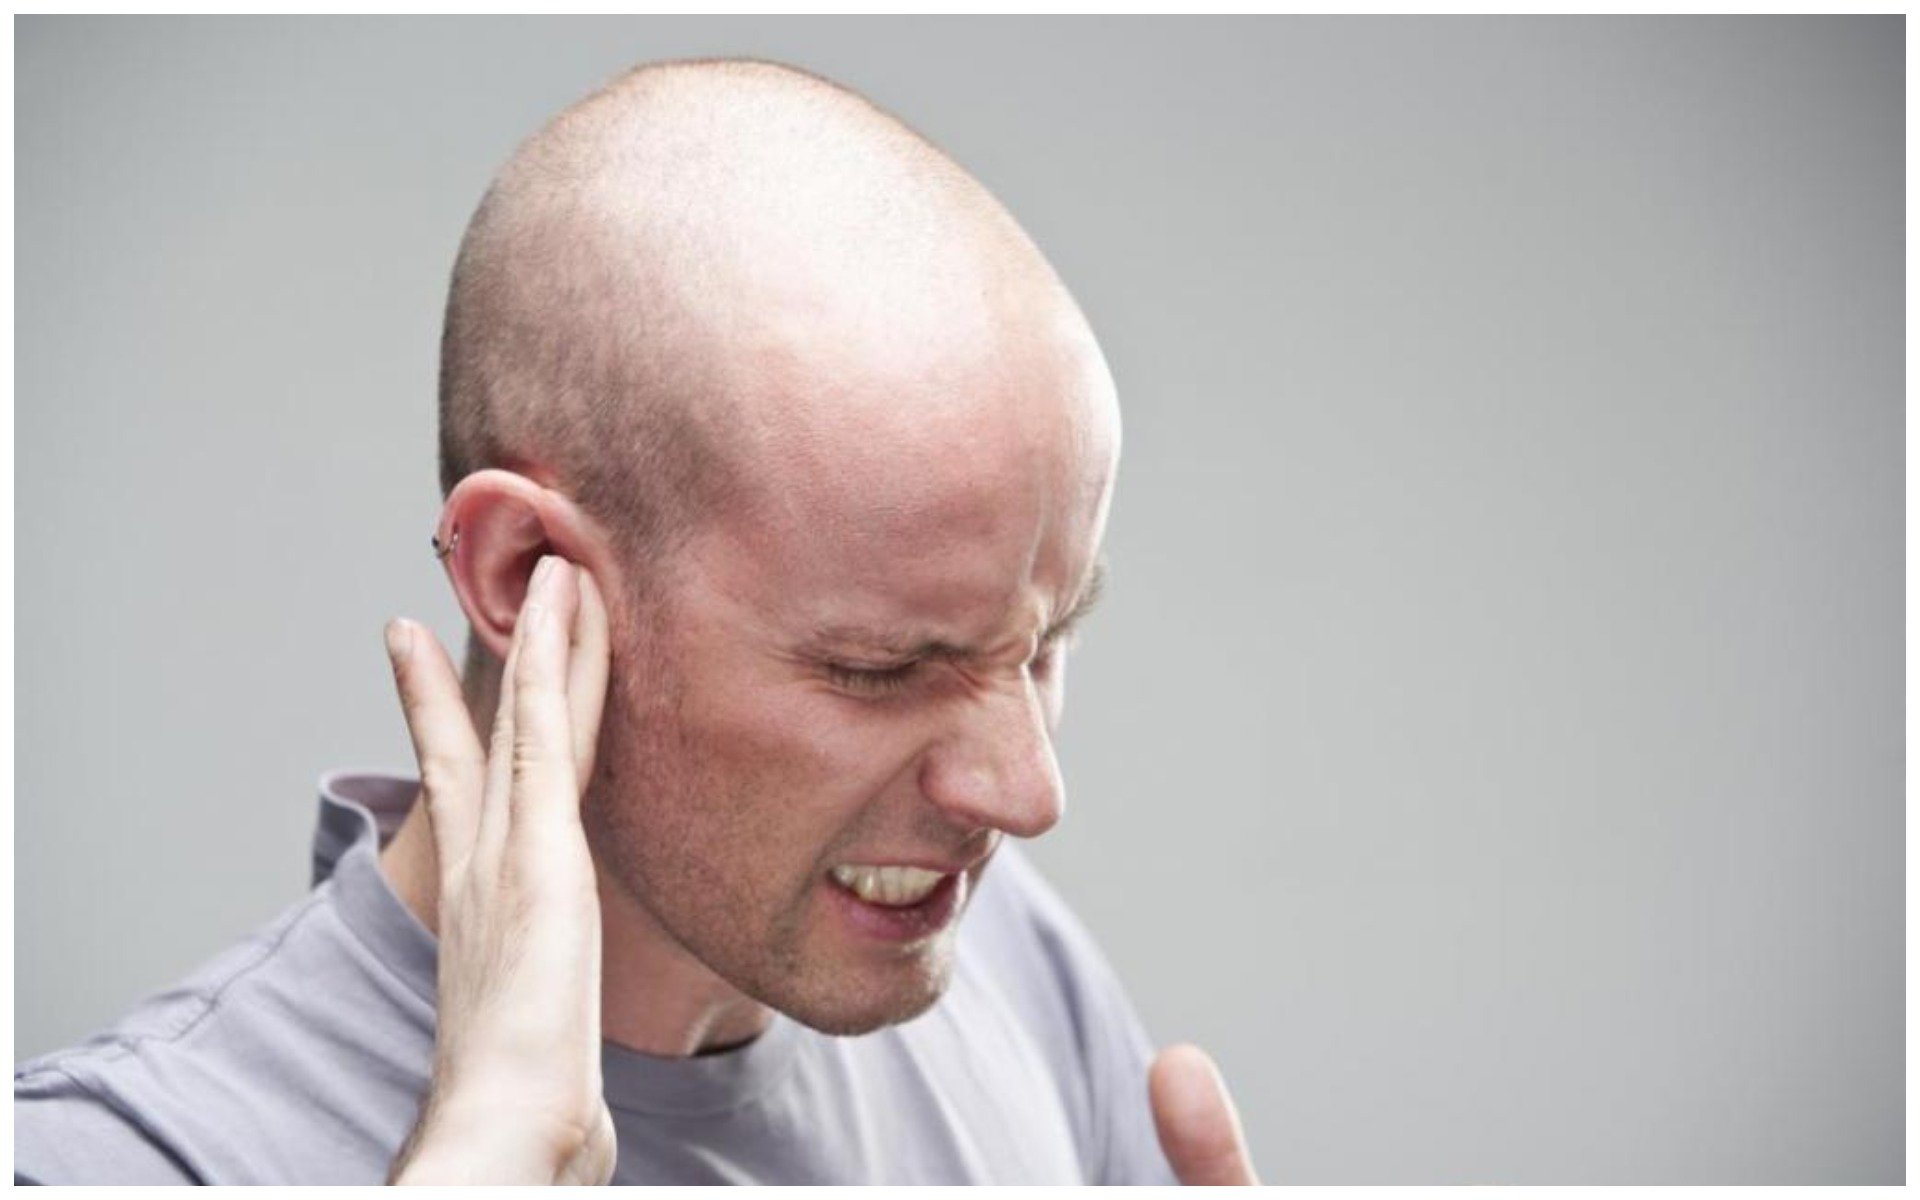 Сильная боль в ухе что делать. Влияние наушников на слух человека.